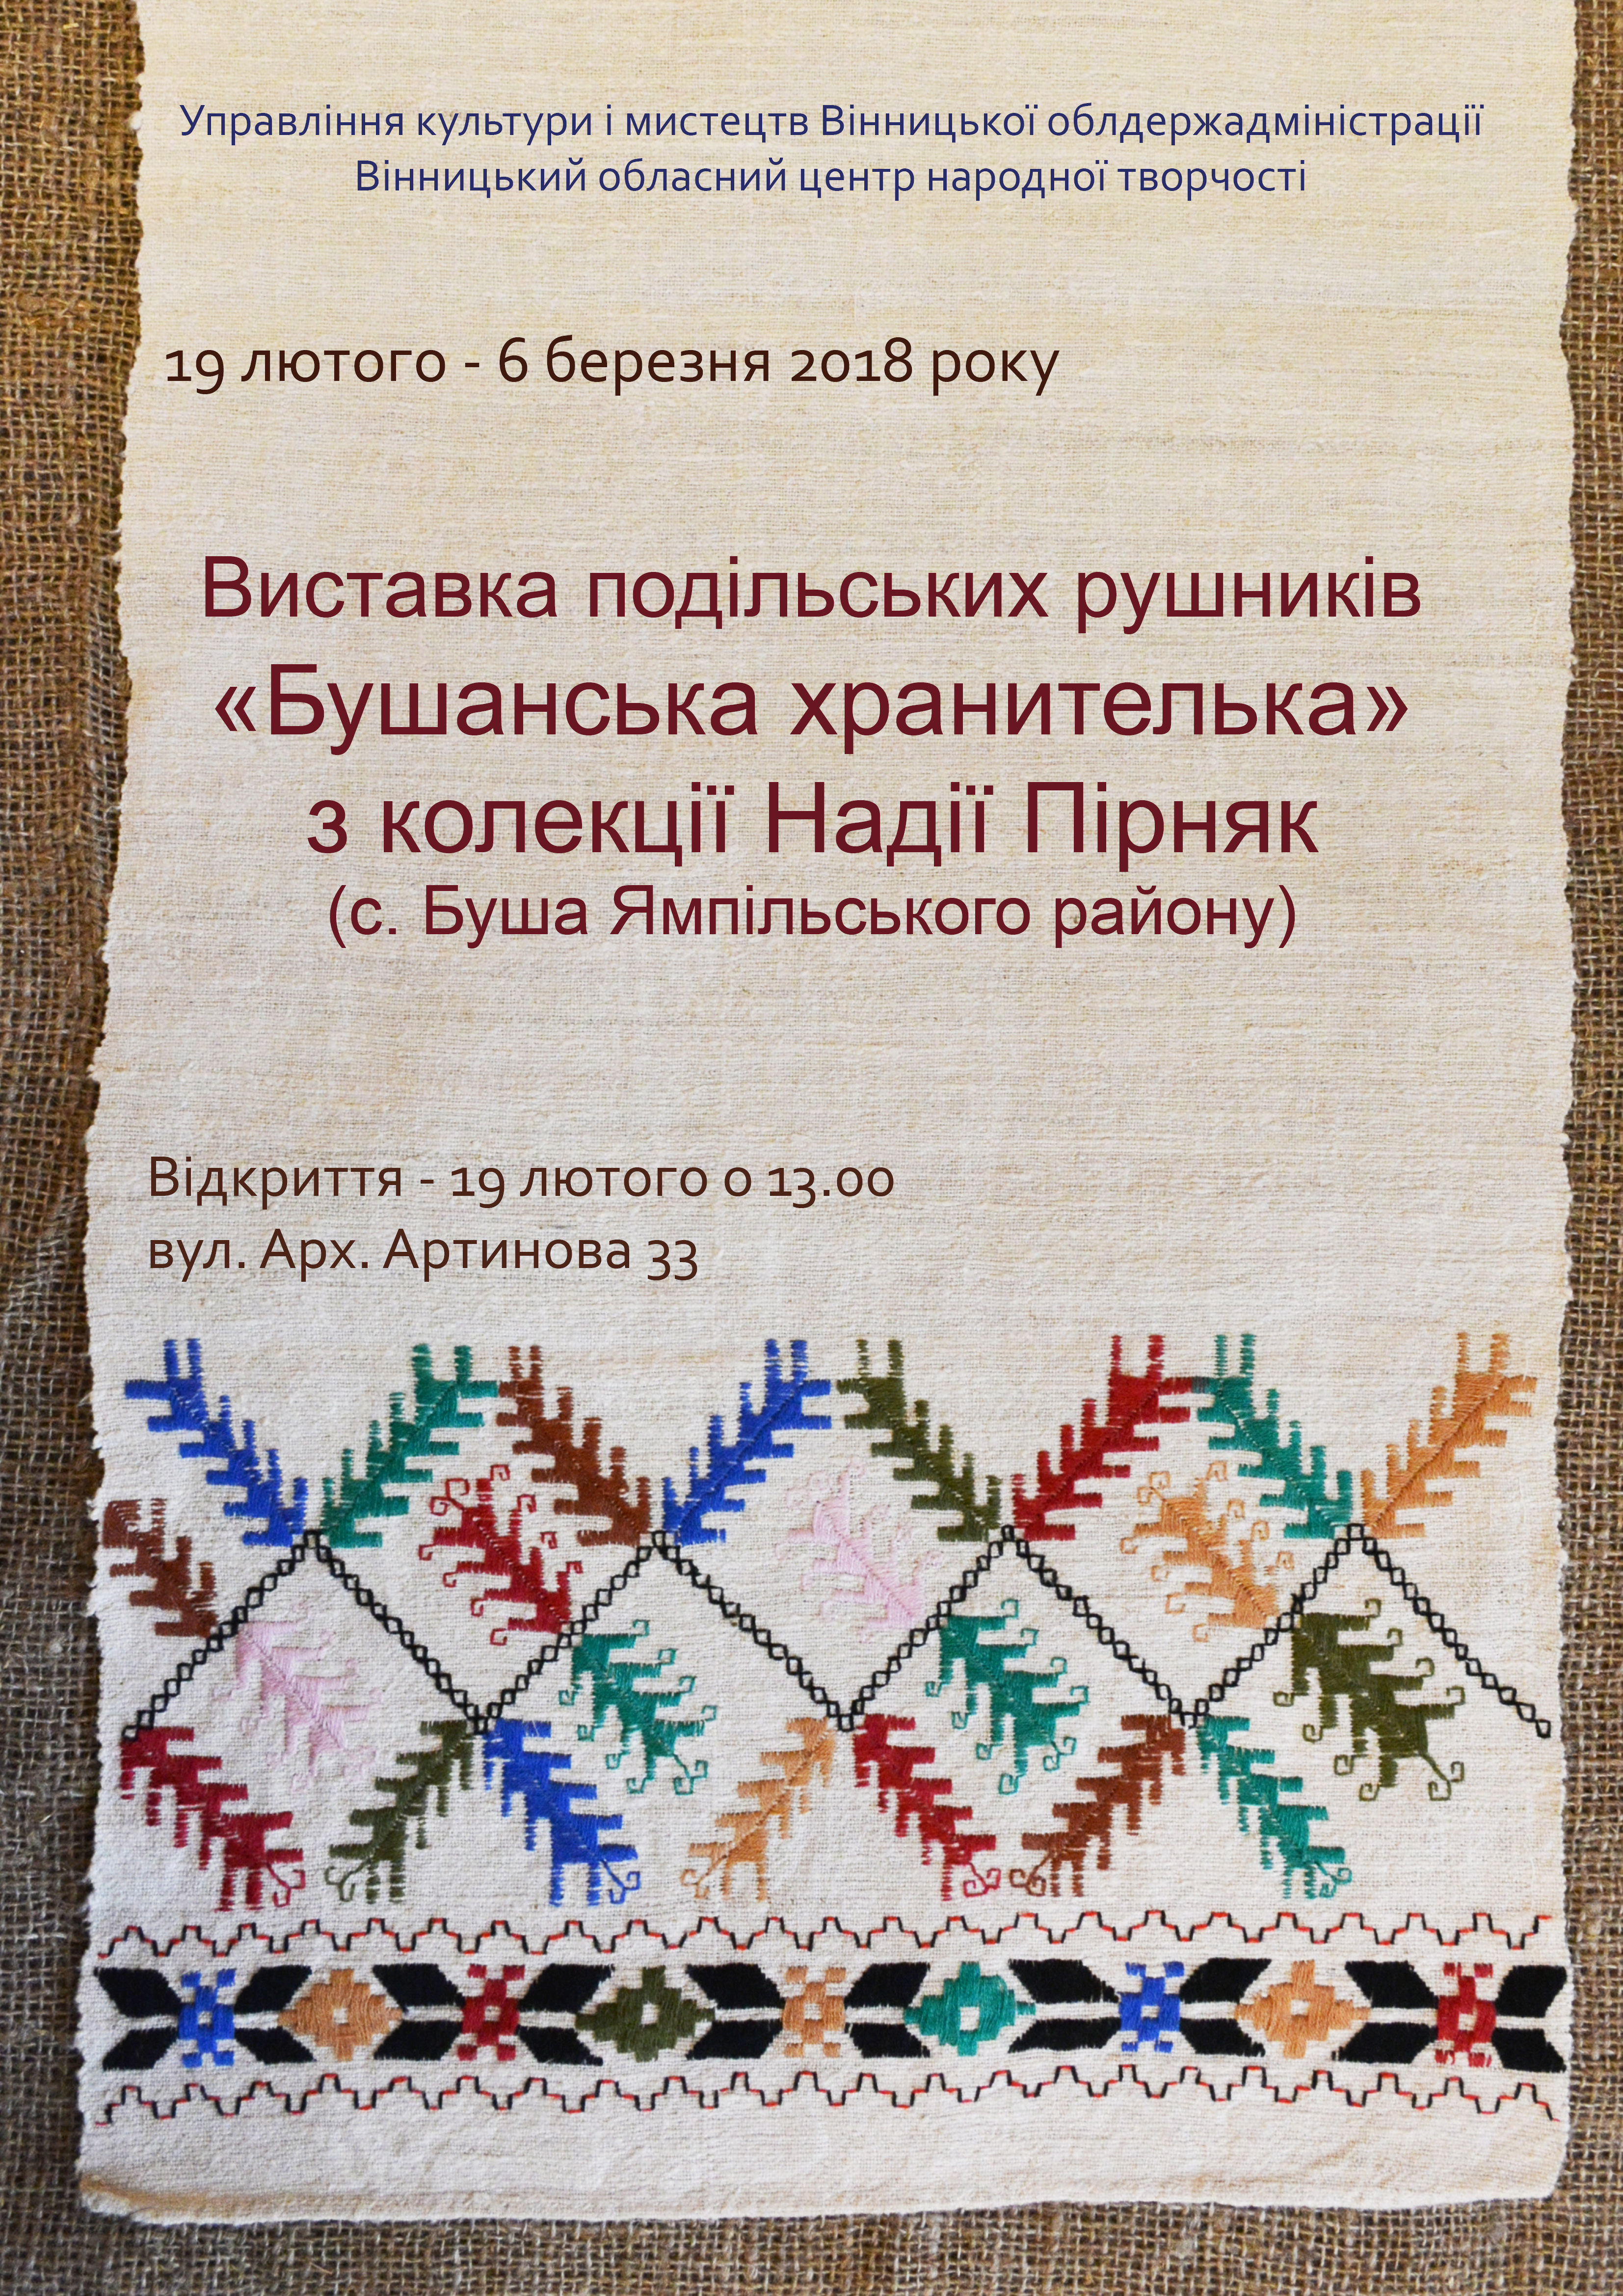 19 лютого – 6 березня 2018 року Виставка подільських рушників «Бушанська хранителька» з колекції Надії Пірняк